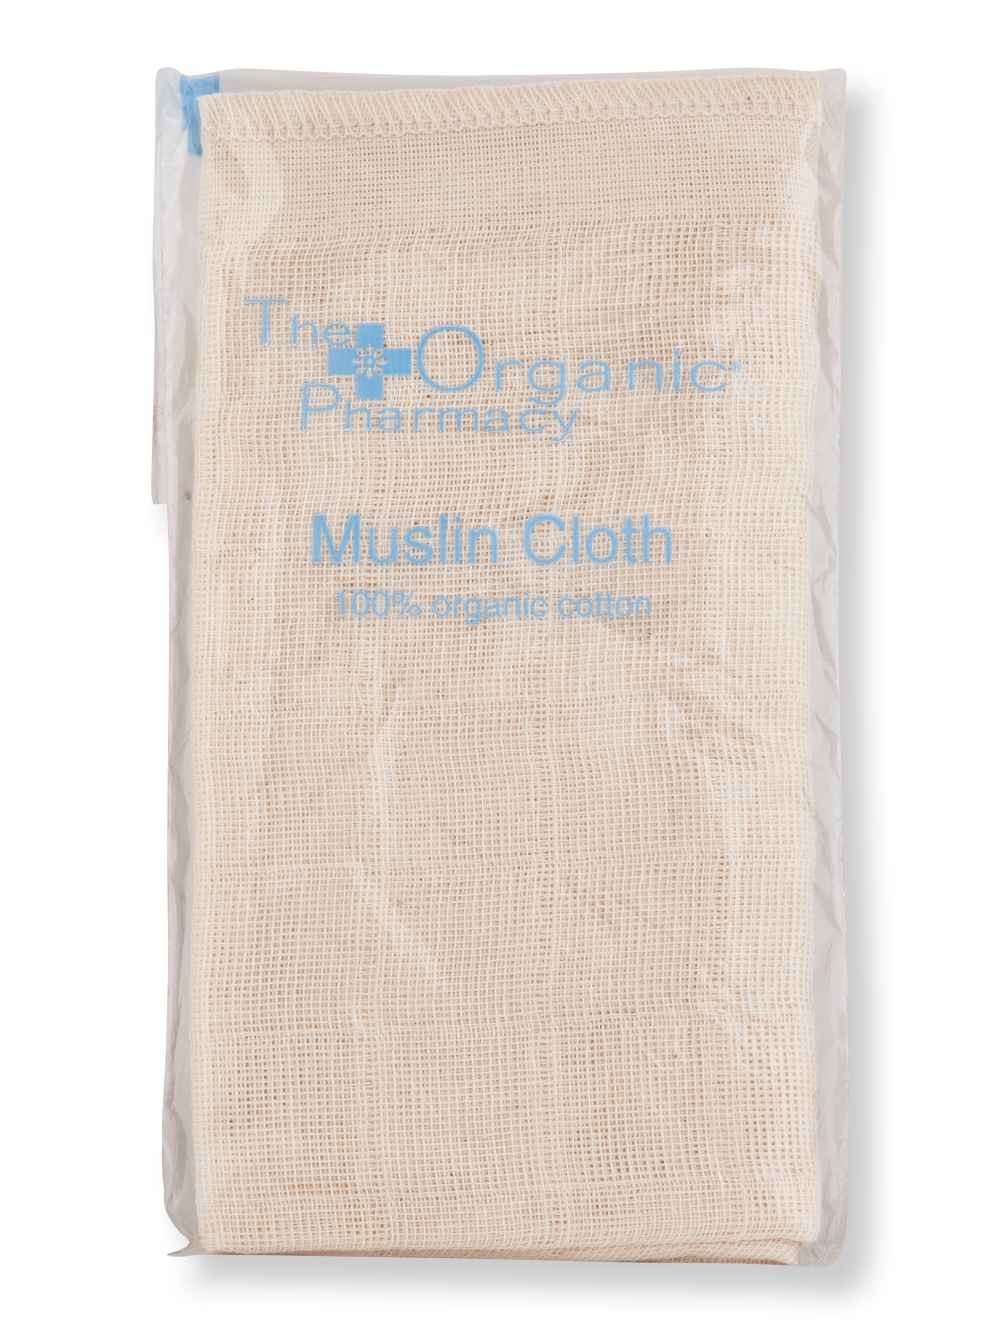 The Organic Pharmacy The Organic Pharmacy Organic Muslin Cloth Makeup Removers 